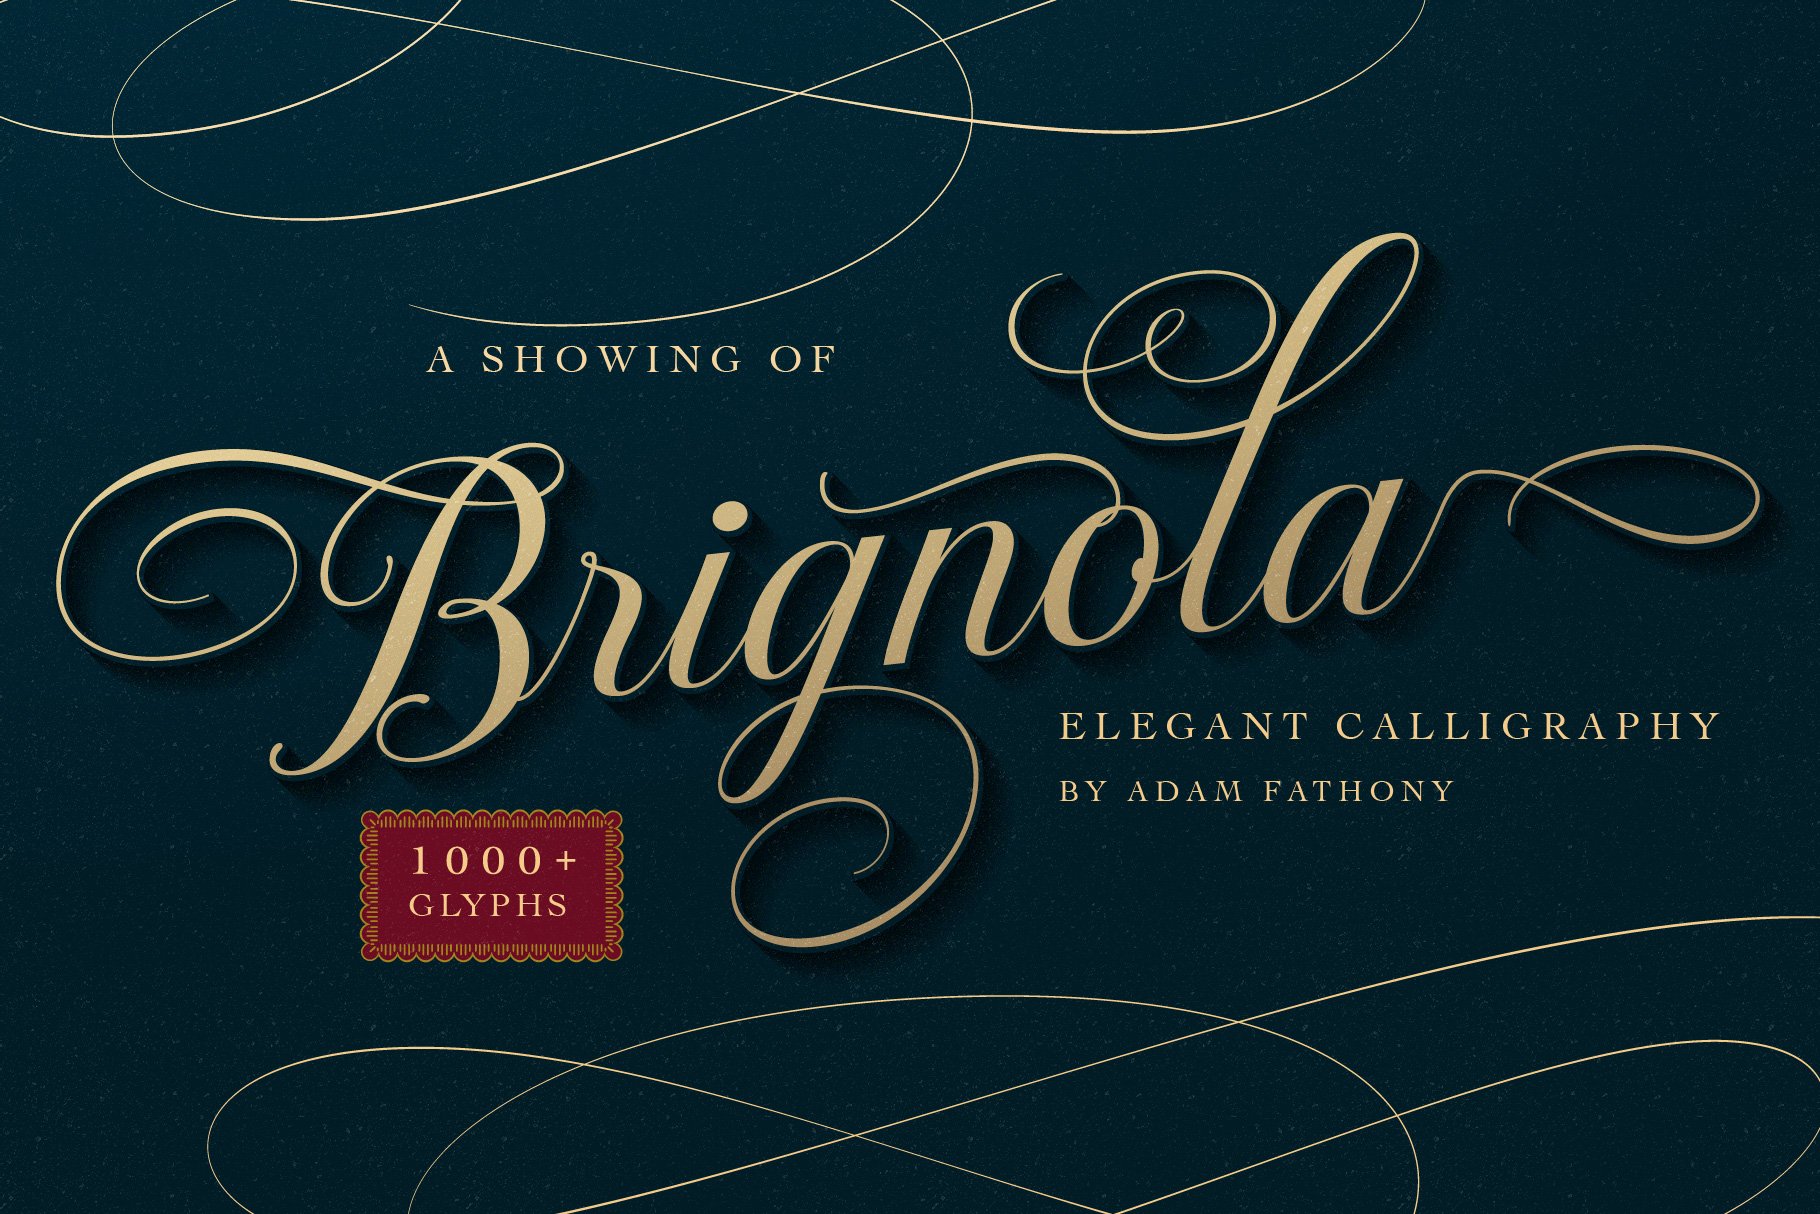 Brignola Elegant Calligraphy